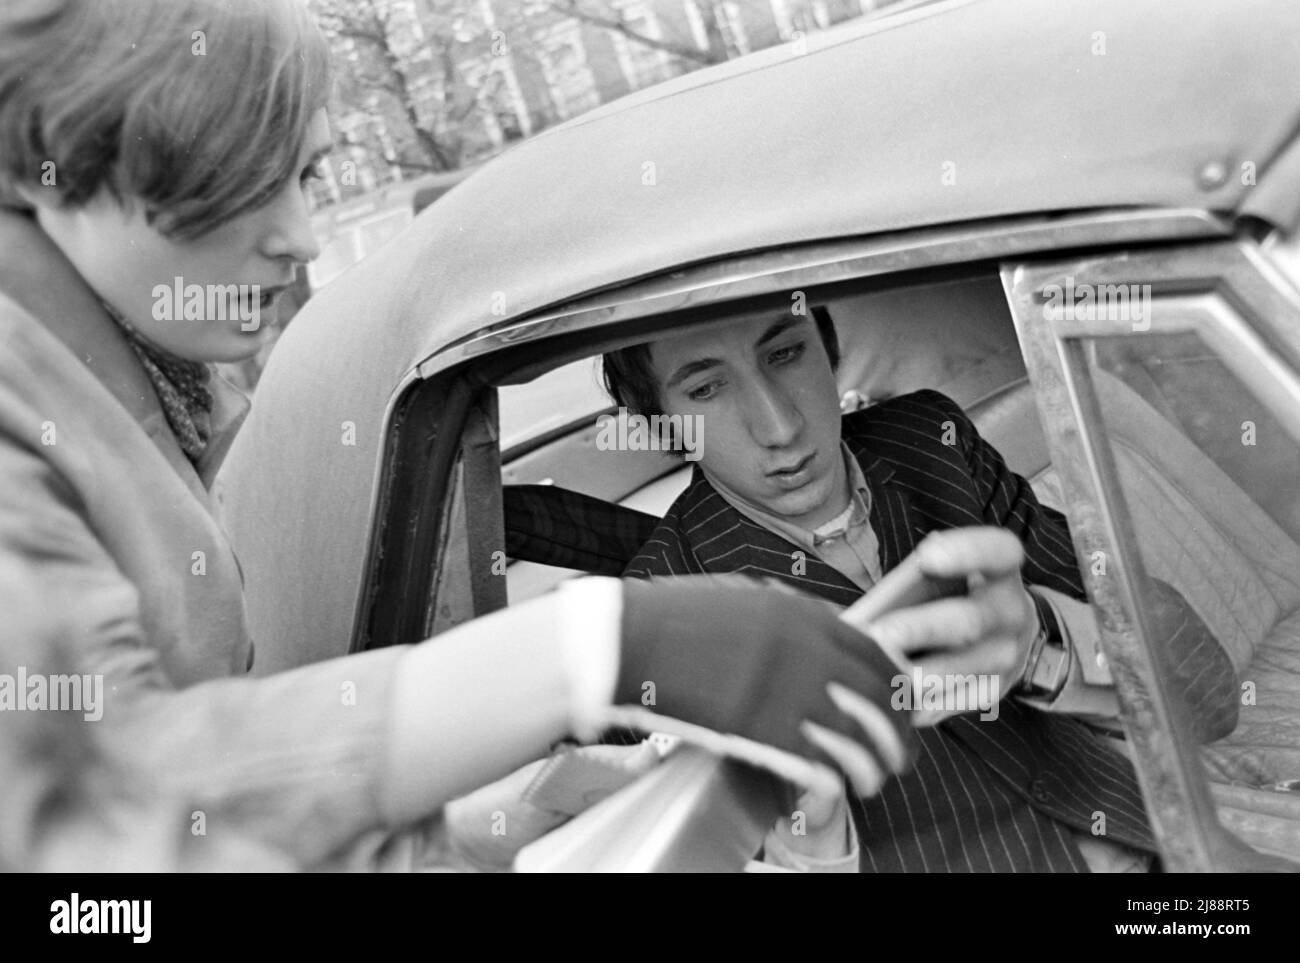 THE WHO Pete Townshend unterzeichnet im November 1966 ein Autogramm, als er eine Live-Außensitzung für das deutsche Fernsehen auf dem Gelände des Hauptquartiers des Herzogs von York, Chelsea, London, verlässt. Foto: Tony Galer Stockfoto